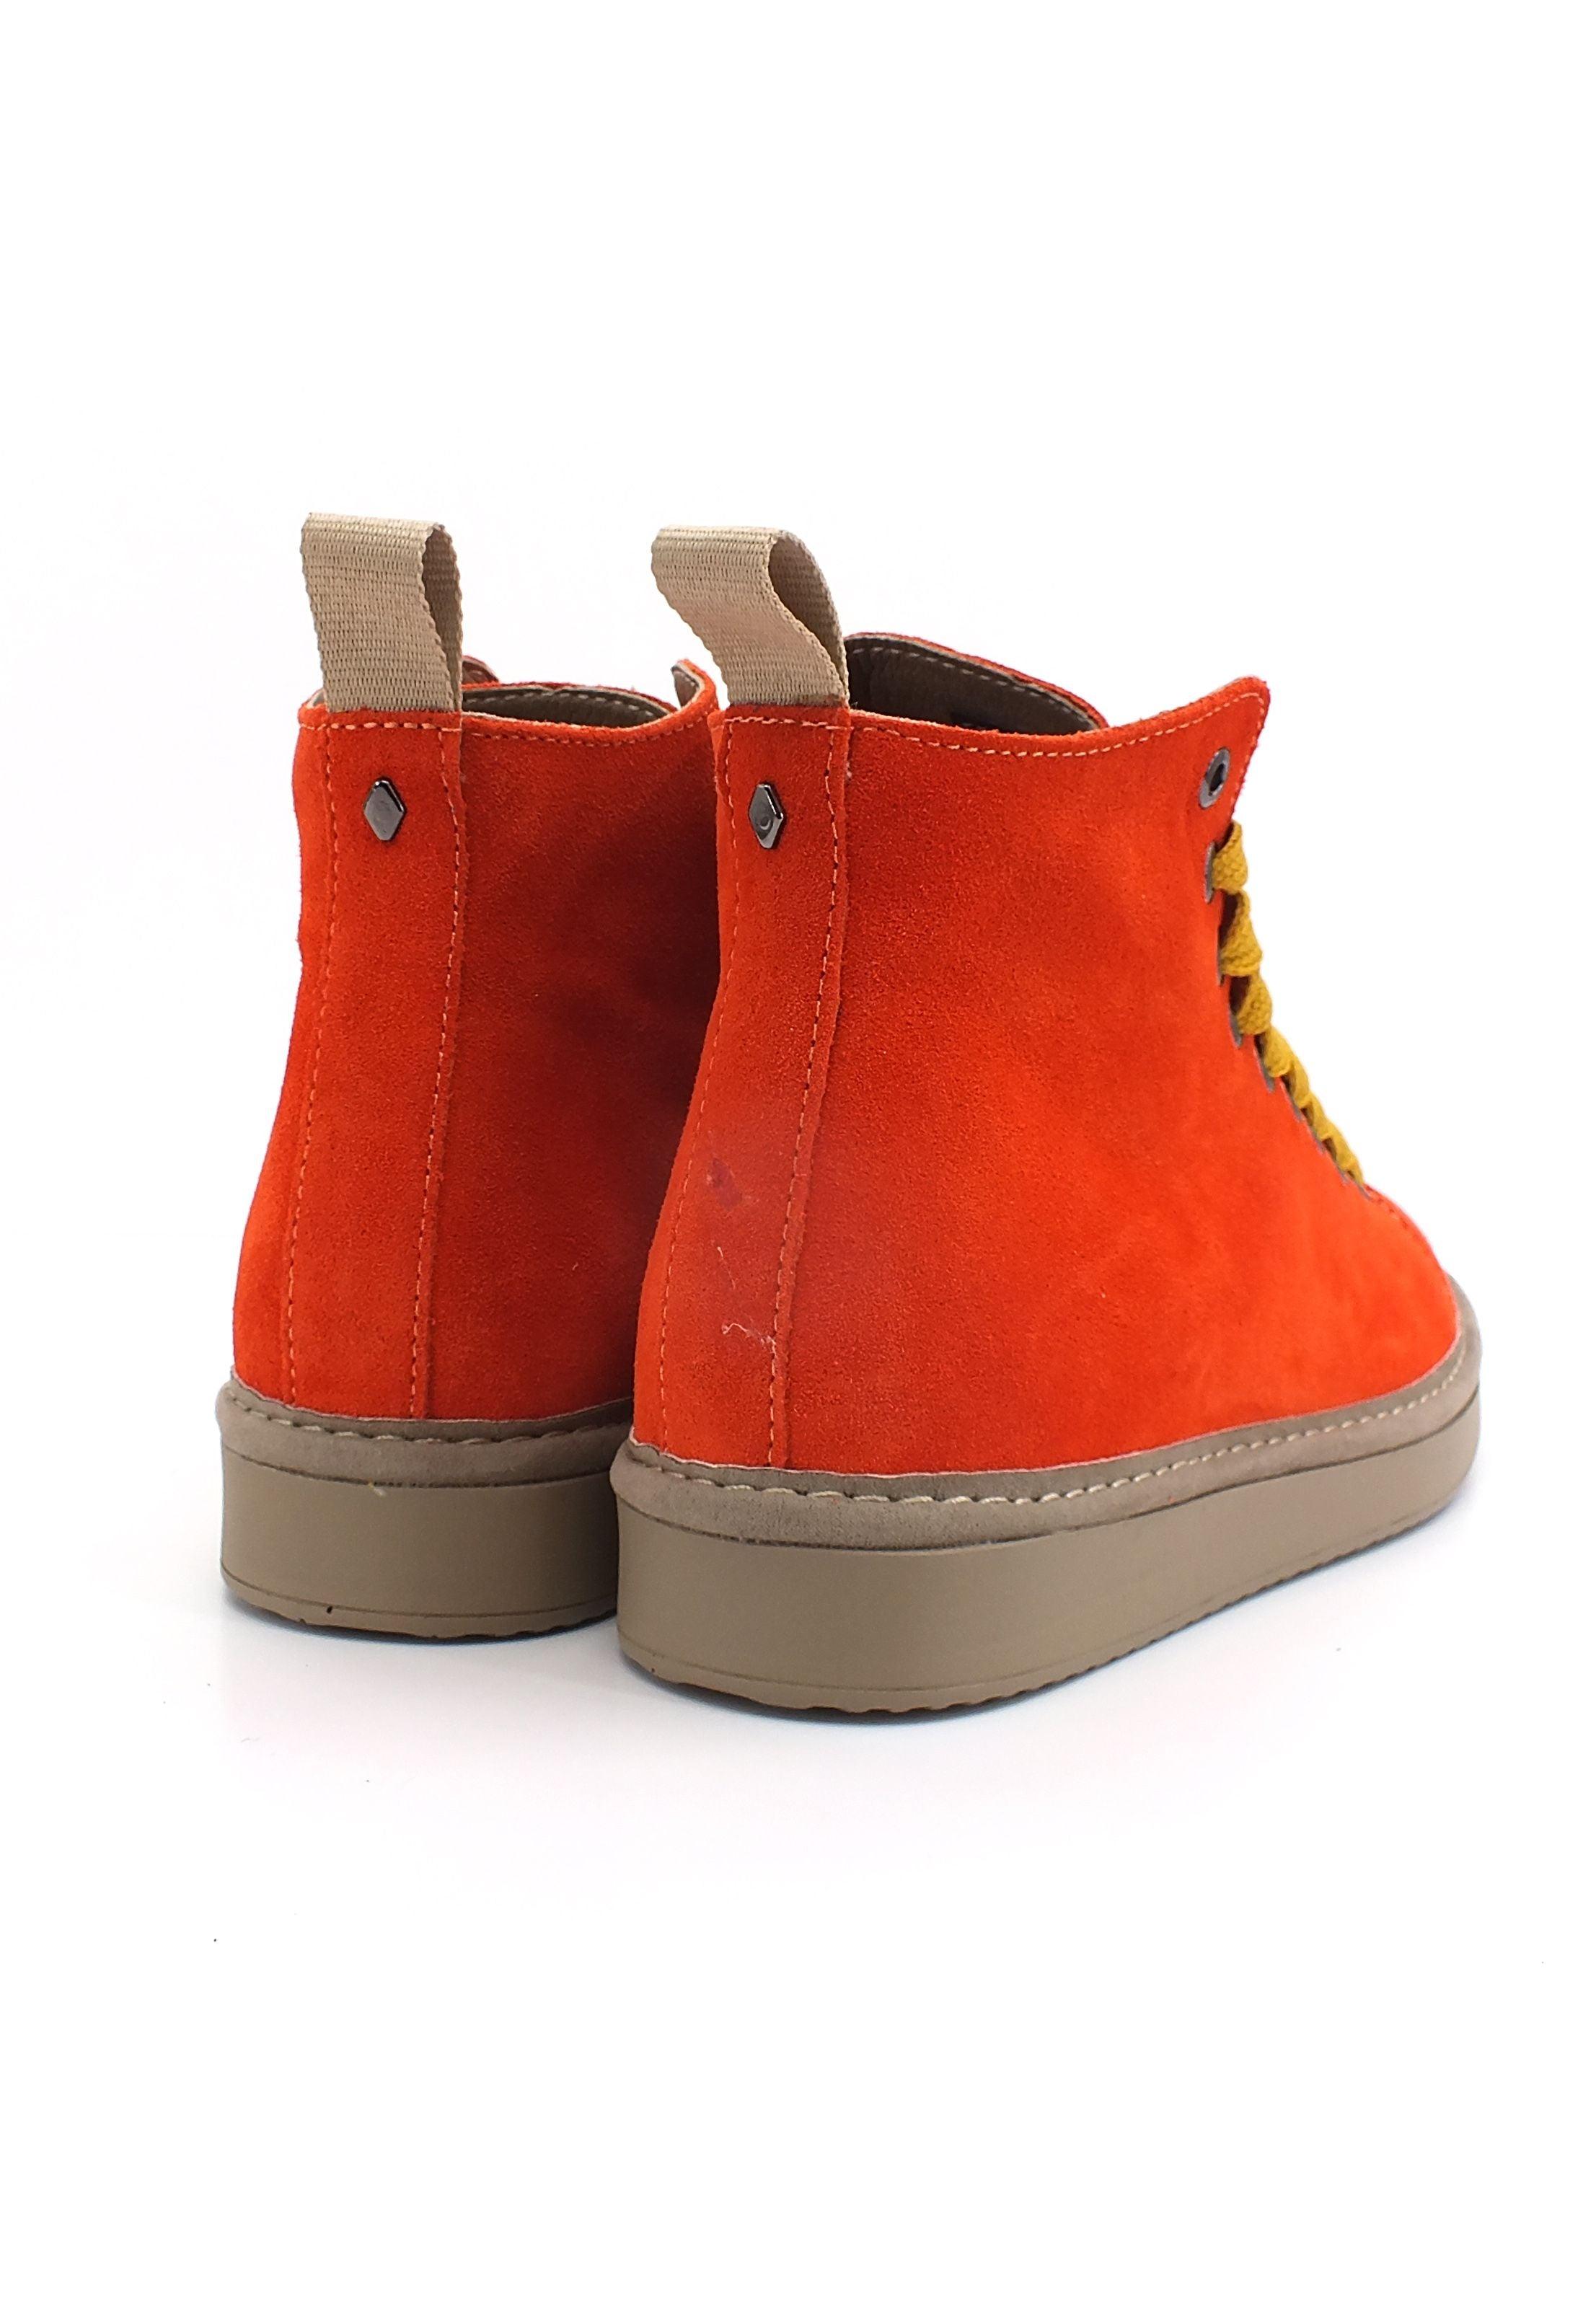 PAN CHIC Ankle Boot Sneaker Donna Orange Yellow P01W1400200005 - Sandrini Calzature e Abbigliamento